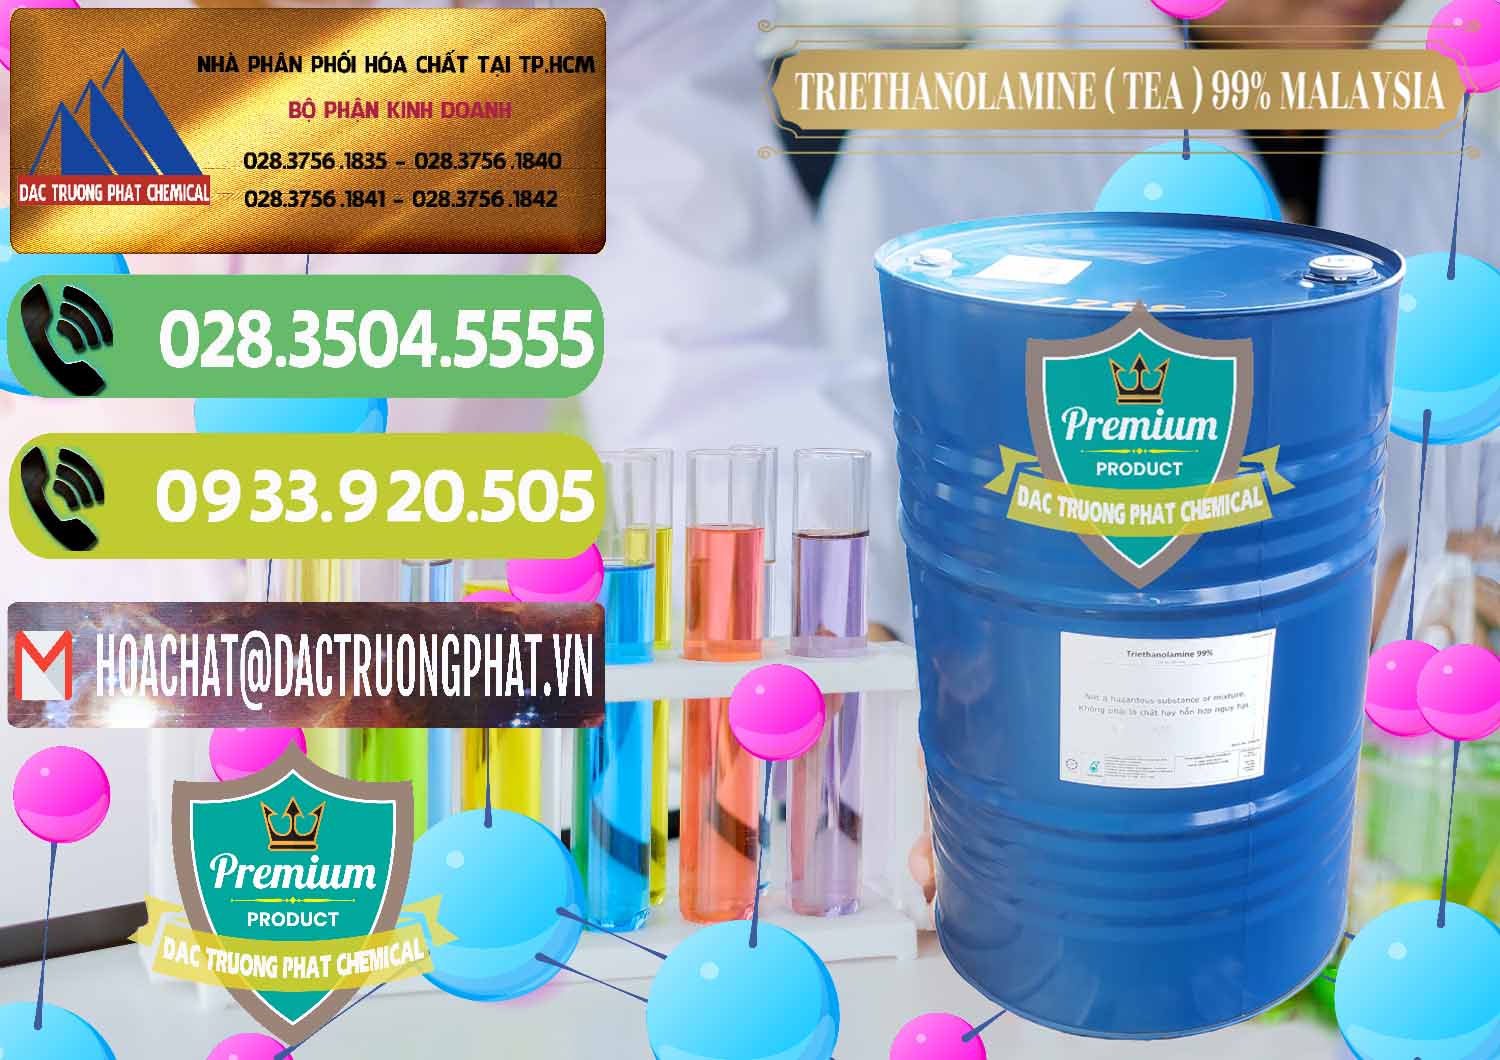 Nhà cung ứng _ bán TEA - Triethanolamine 99% Mã Lai Malaysia - 0323 - Đơn vị chuyên bán - phân phối hóa chất tại TP.HCM - hoachatmientay.vn